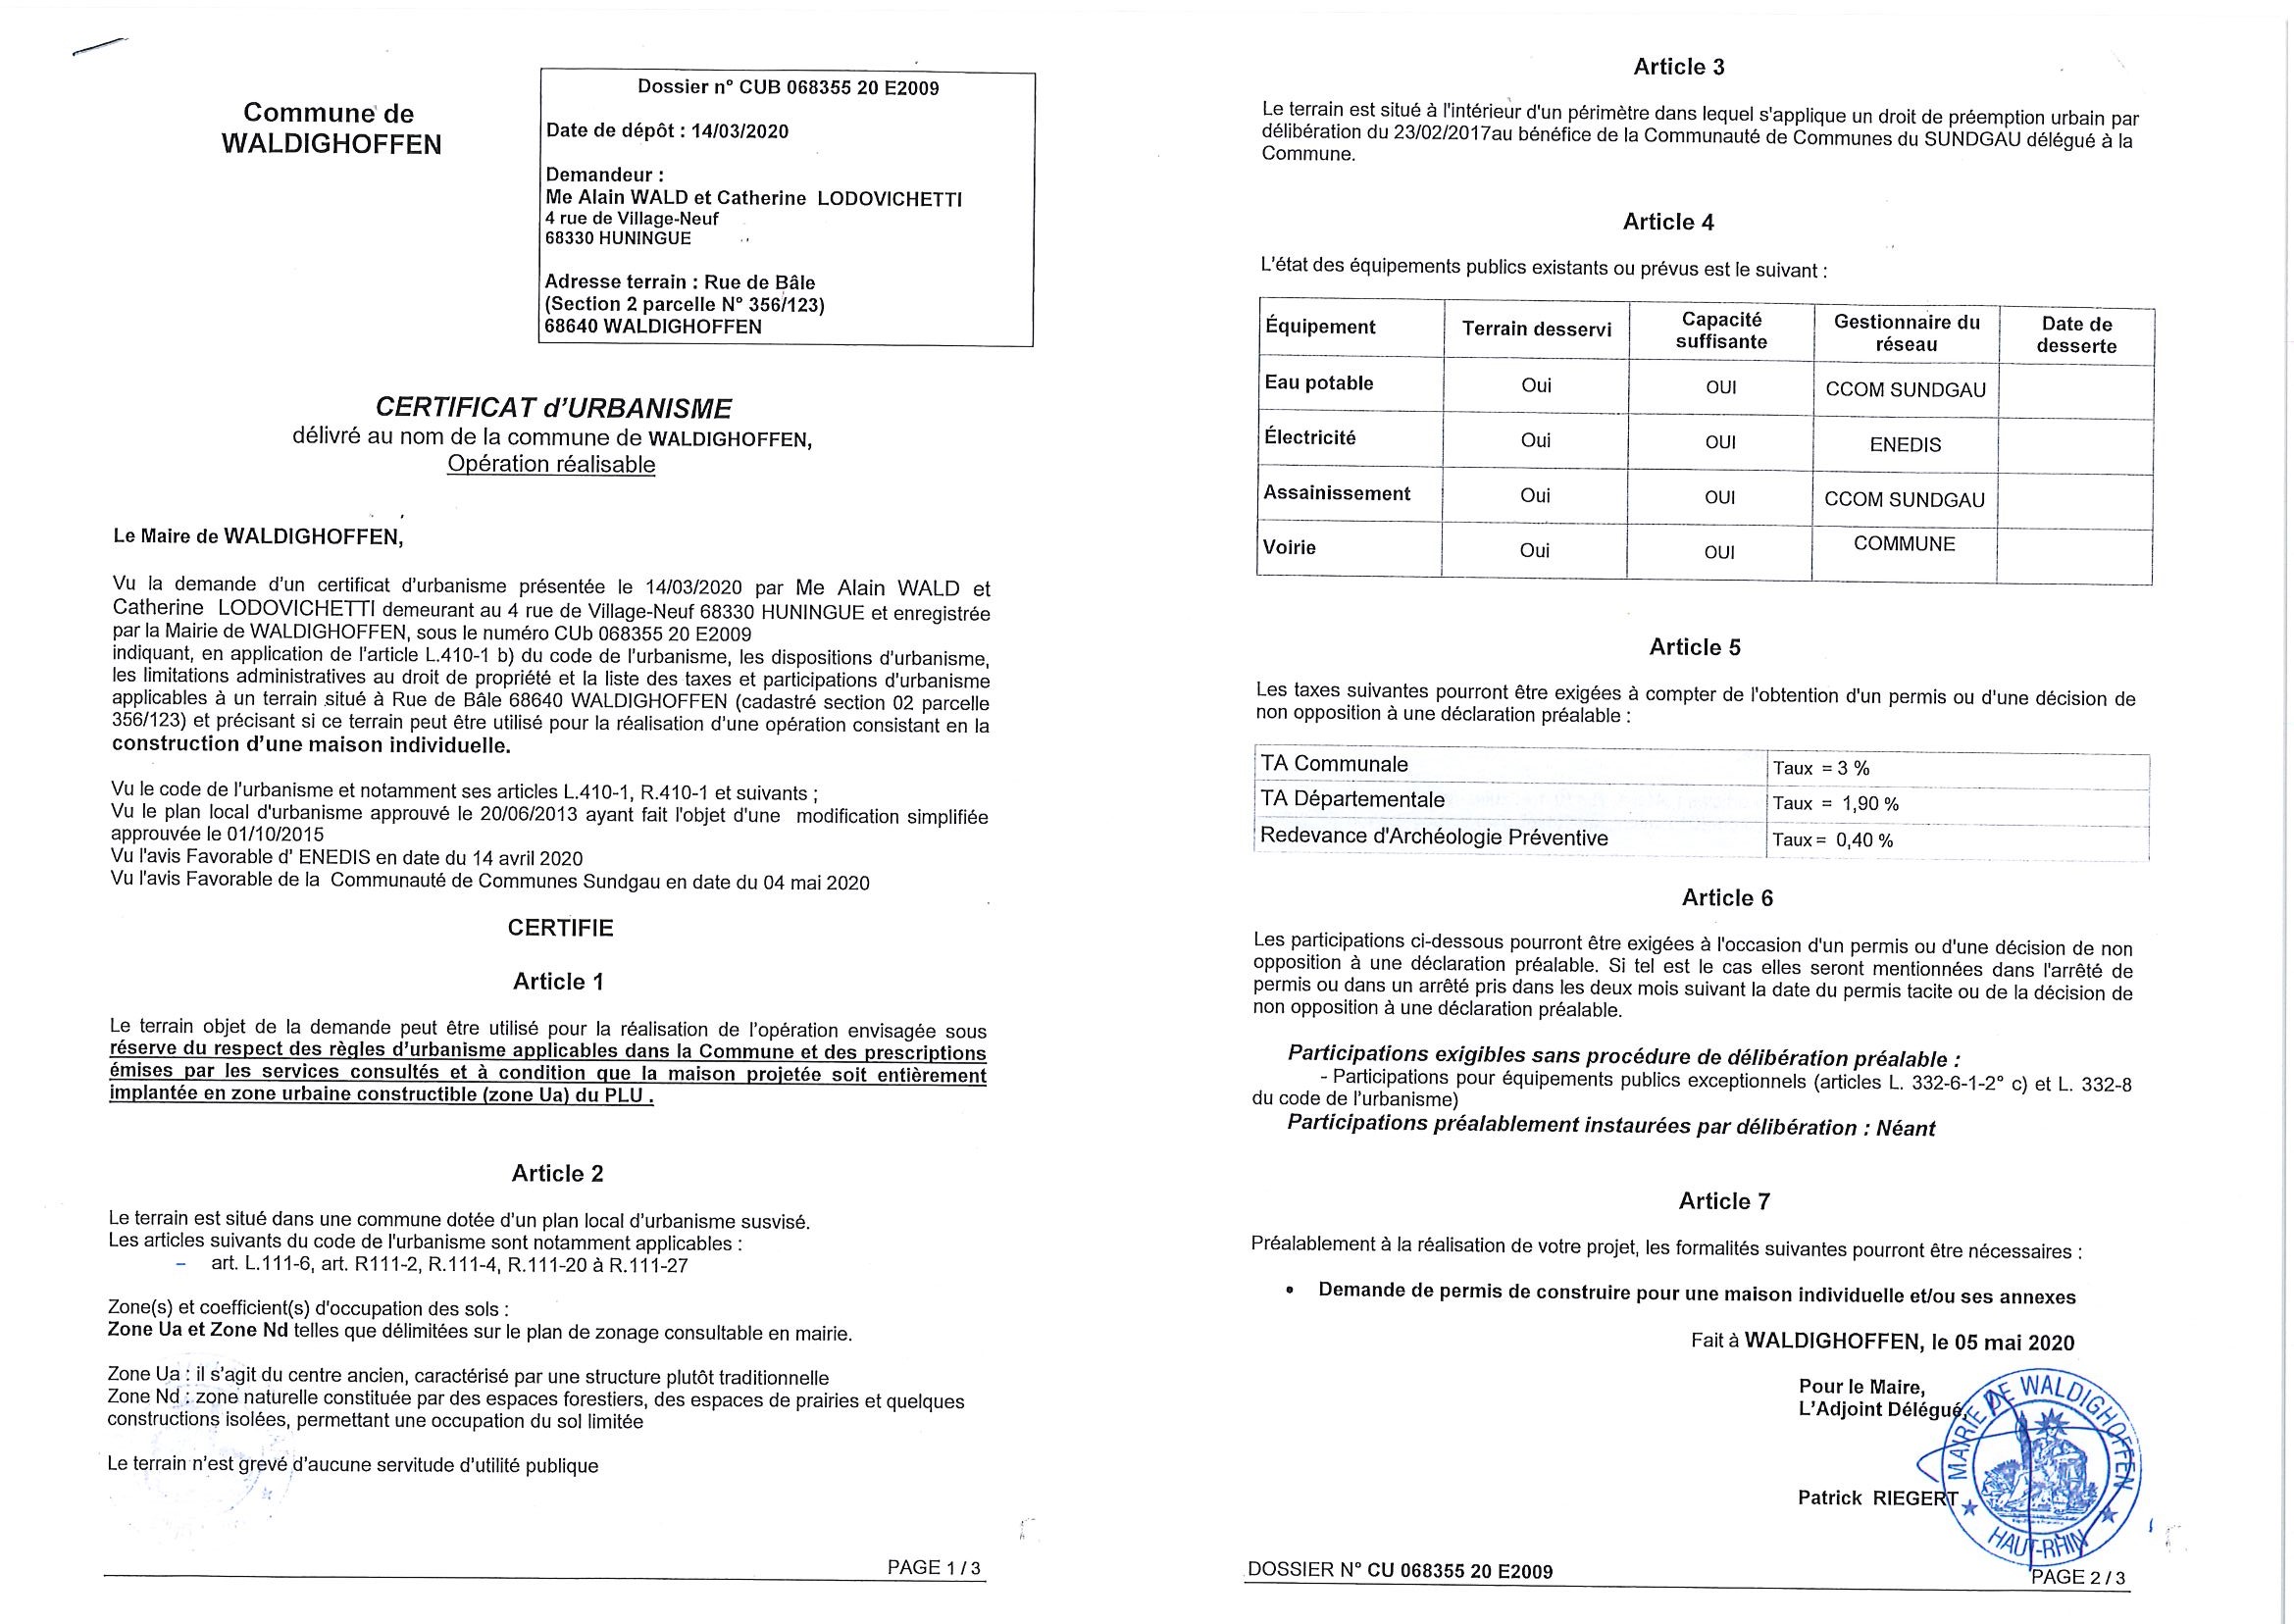 Certificat d'urbanisme opérationnel établi pour a SCP Wald et Lodovichetti